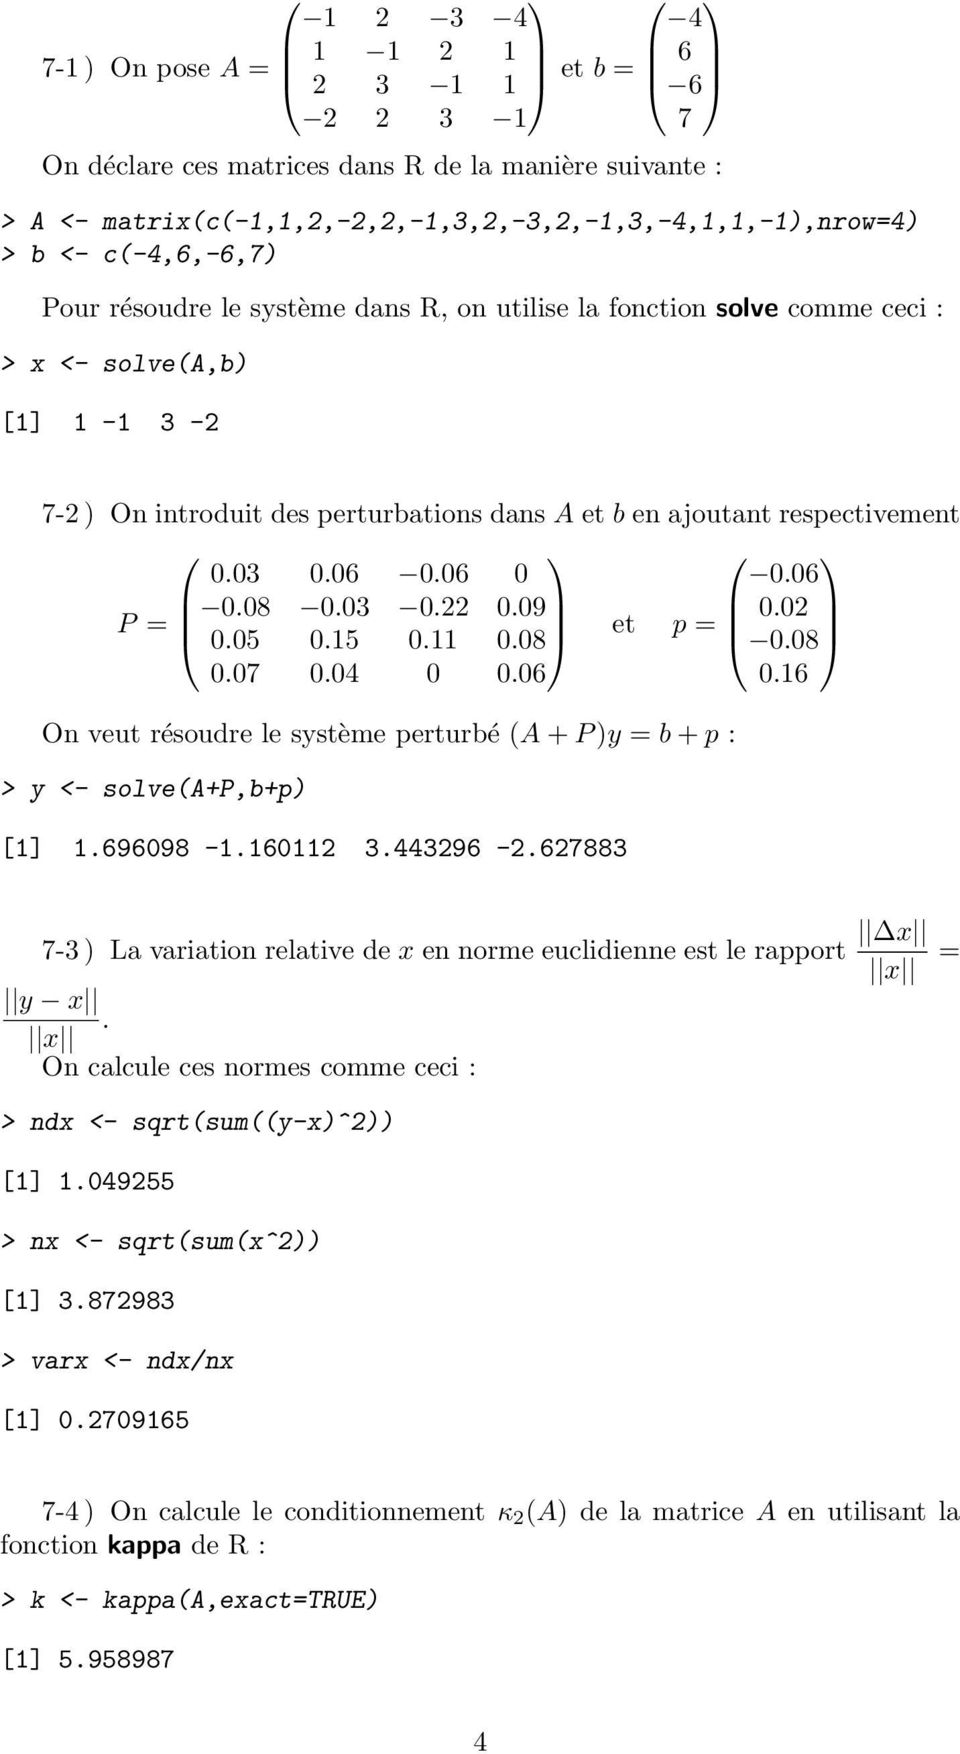 03 0.06 0.06 0 0.06 P = 0.08 0.03 0.22 0.09 0.05 0.15 0.11 0.08 et p = 0.02 0.08 0.07 0.04 0 0.06 0.16 On veut résoudre le système perturbé (A + P )y = b + p : > y <- solve(a+p,b+p) [1] 1.696098-1.